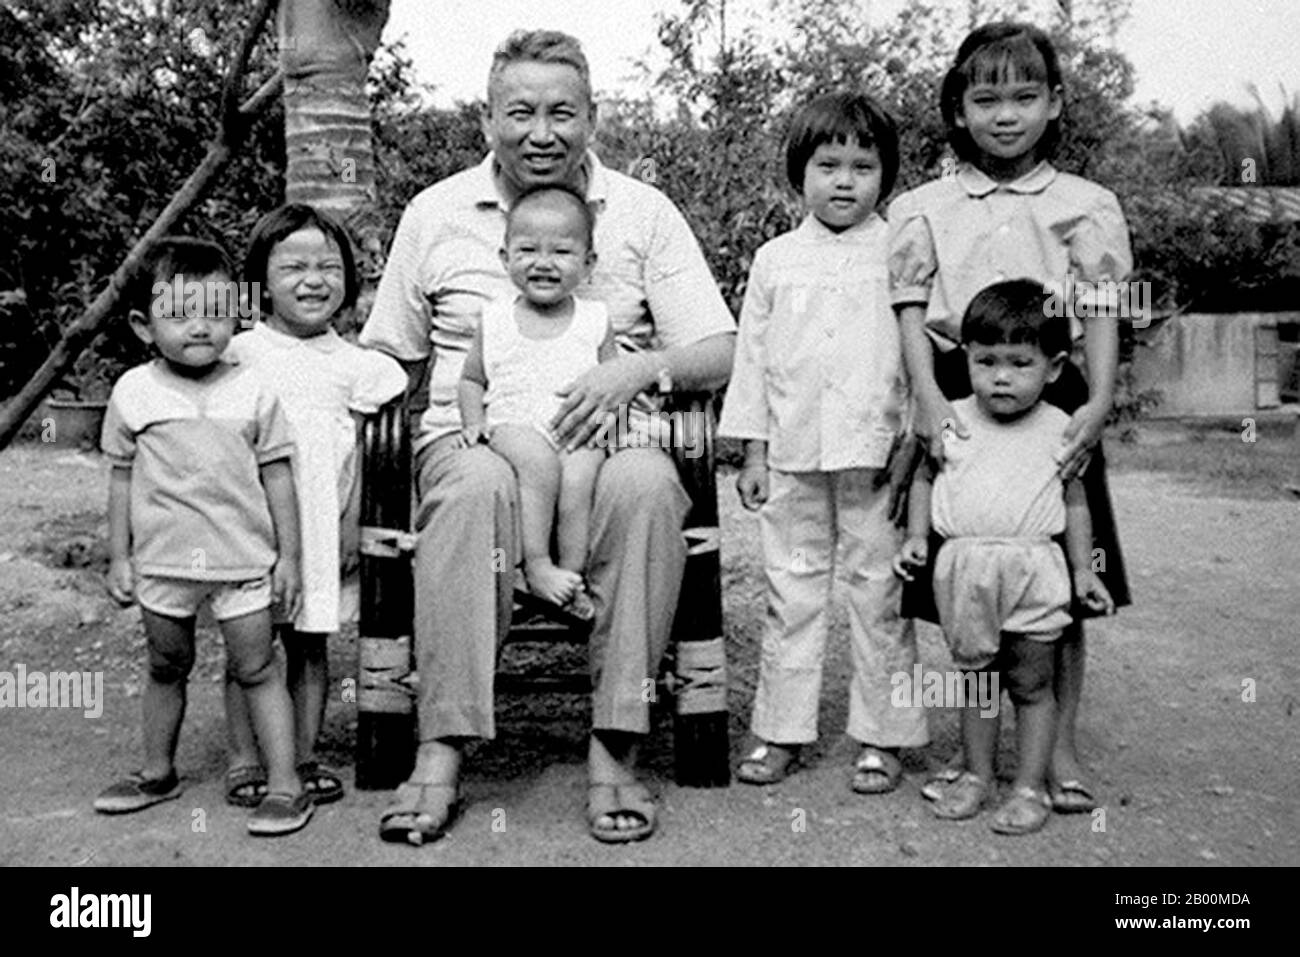 Camboya: El líder de los Jemeres rojos Saloth SAR, alias Pol Pot, sentado con un grupo de niños en Anlong Veng, c. 1990. El niño en su regazo es probablemente la hija de Pol Pot. Otros pueden ser sus nietos, o los de otros cuadros mayores de los Jemeres rojos. Foto probablemente por oficial de kr. Foto de stock